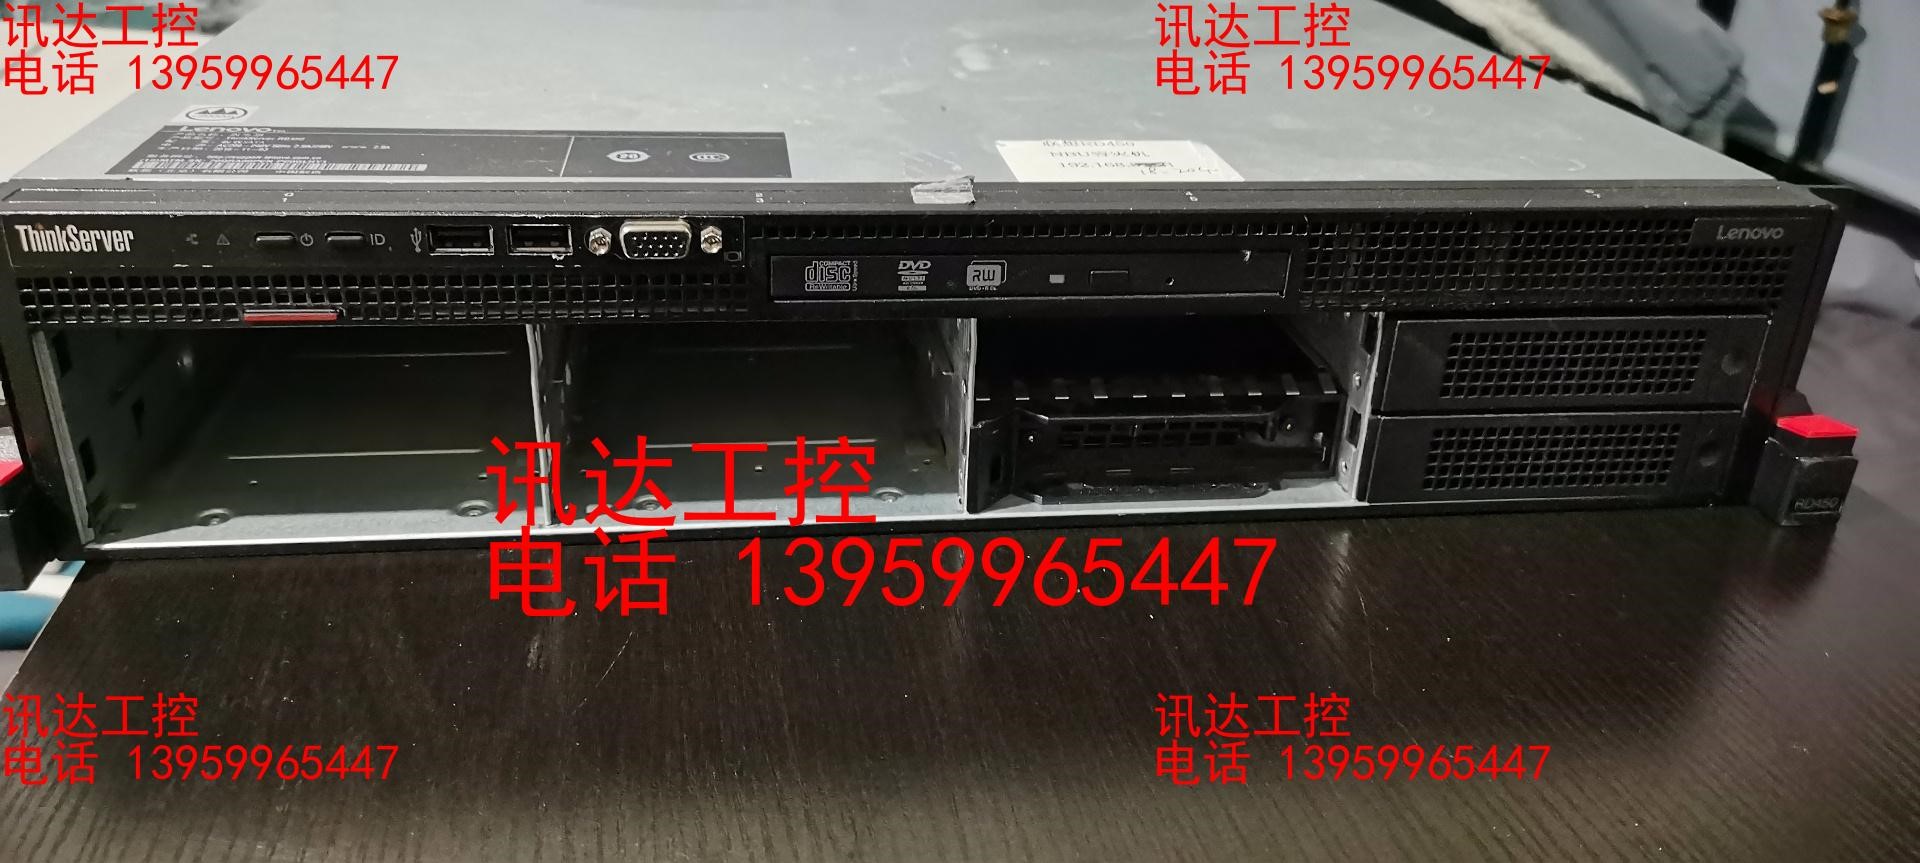 联想RD450/3.5盘位服务器 X99主板可单出